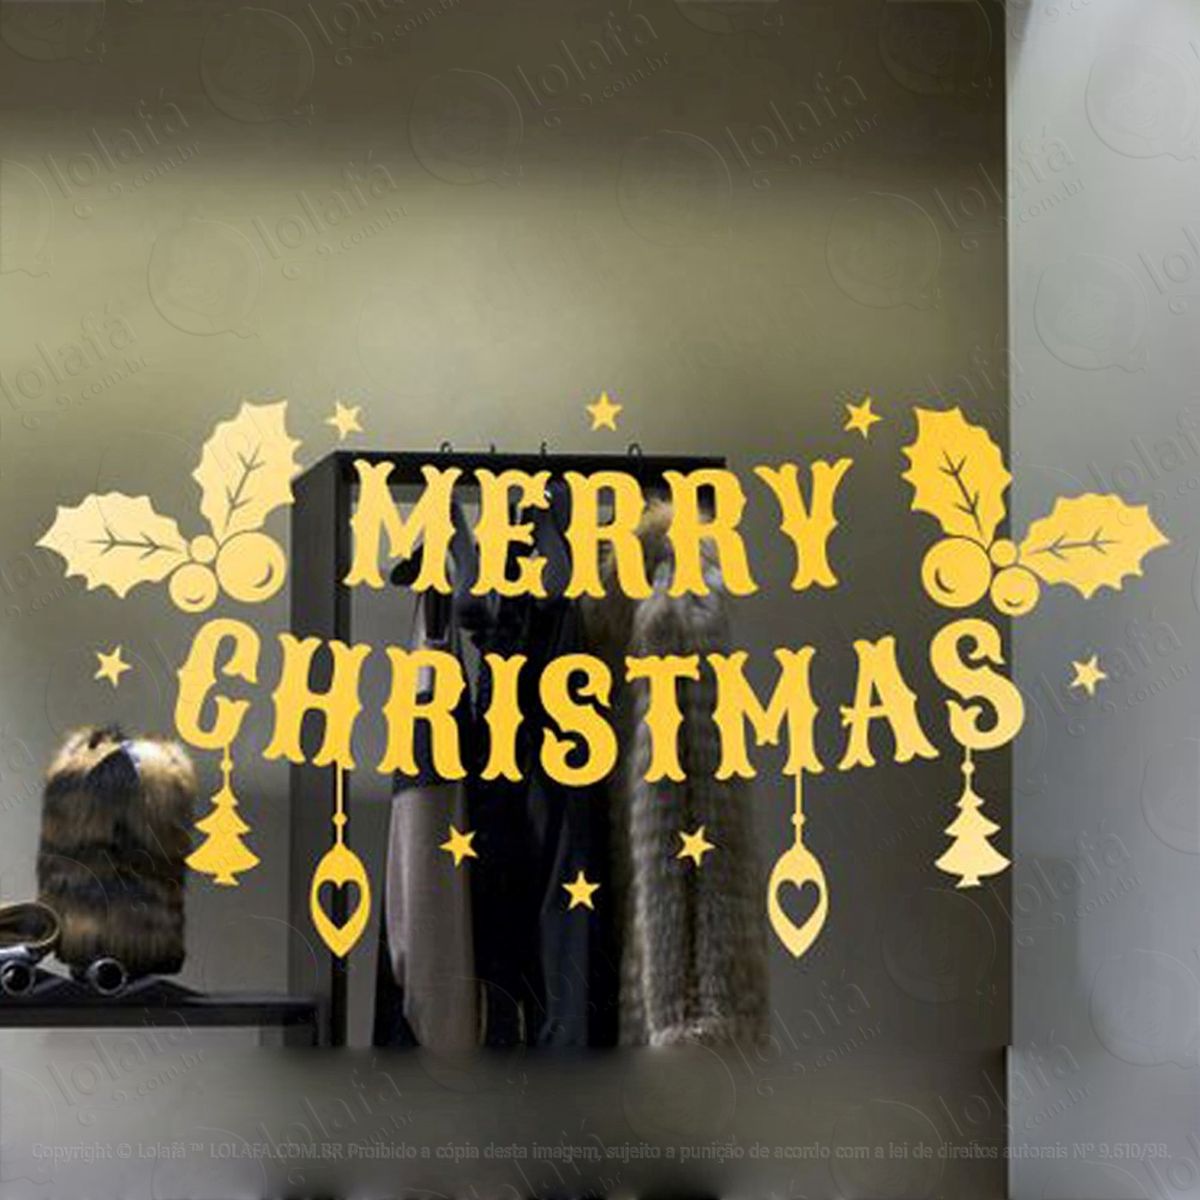 merry christmas adesivo de natal para vitrine, parede, porta de vidro - decoração natalina mod:296